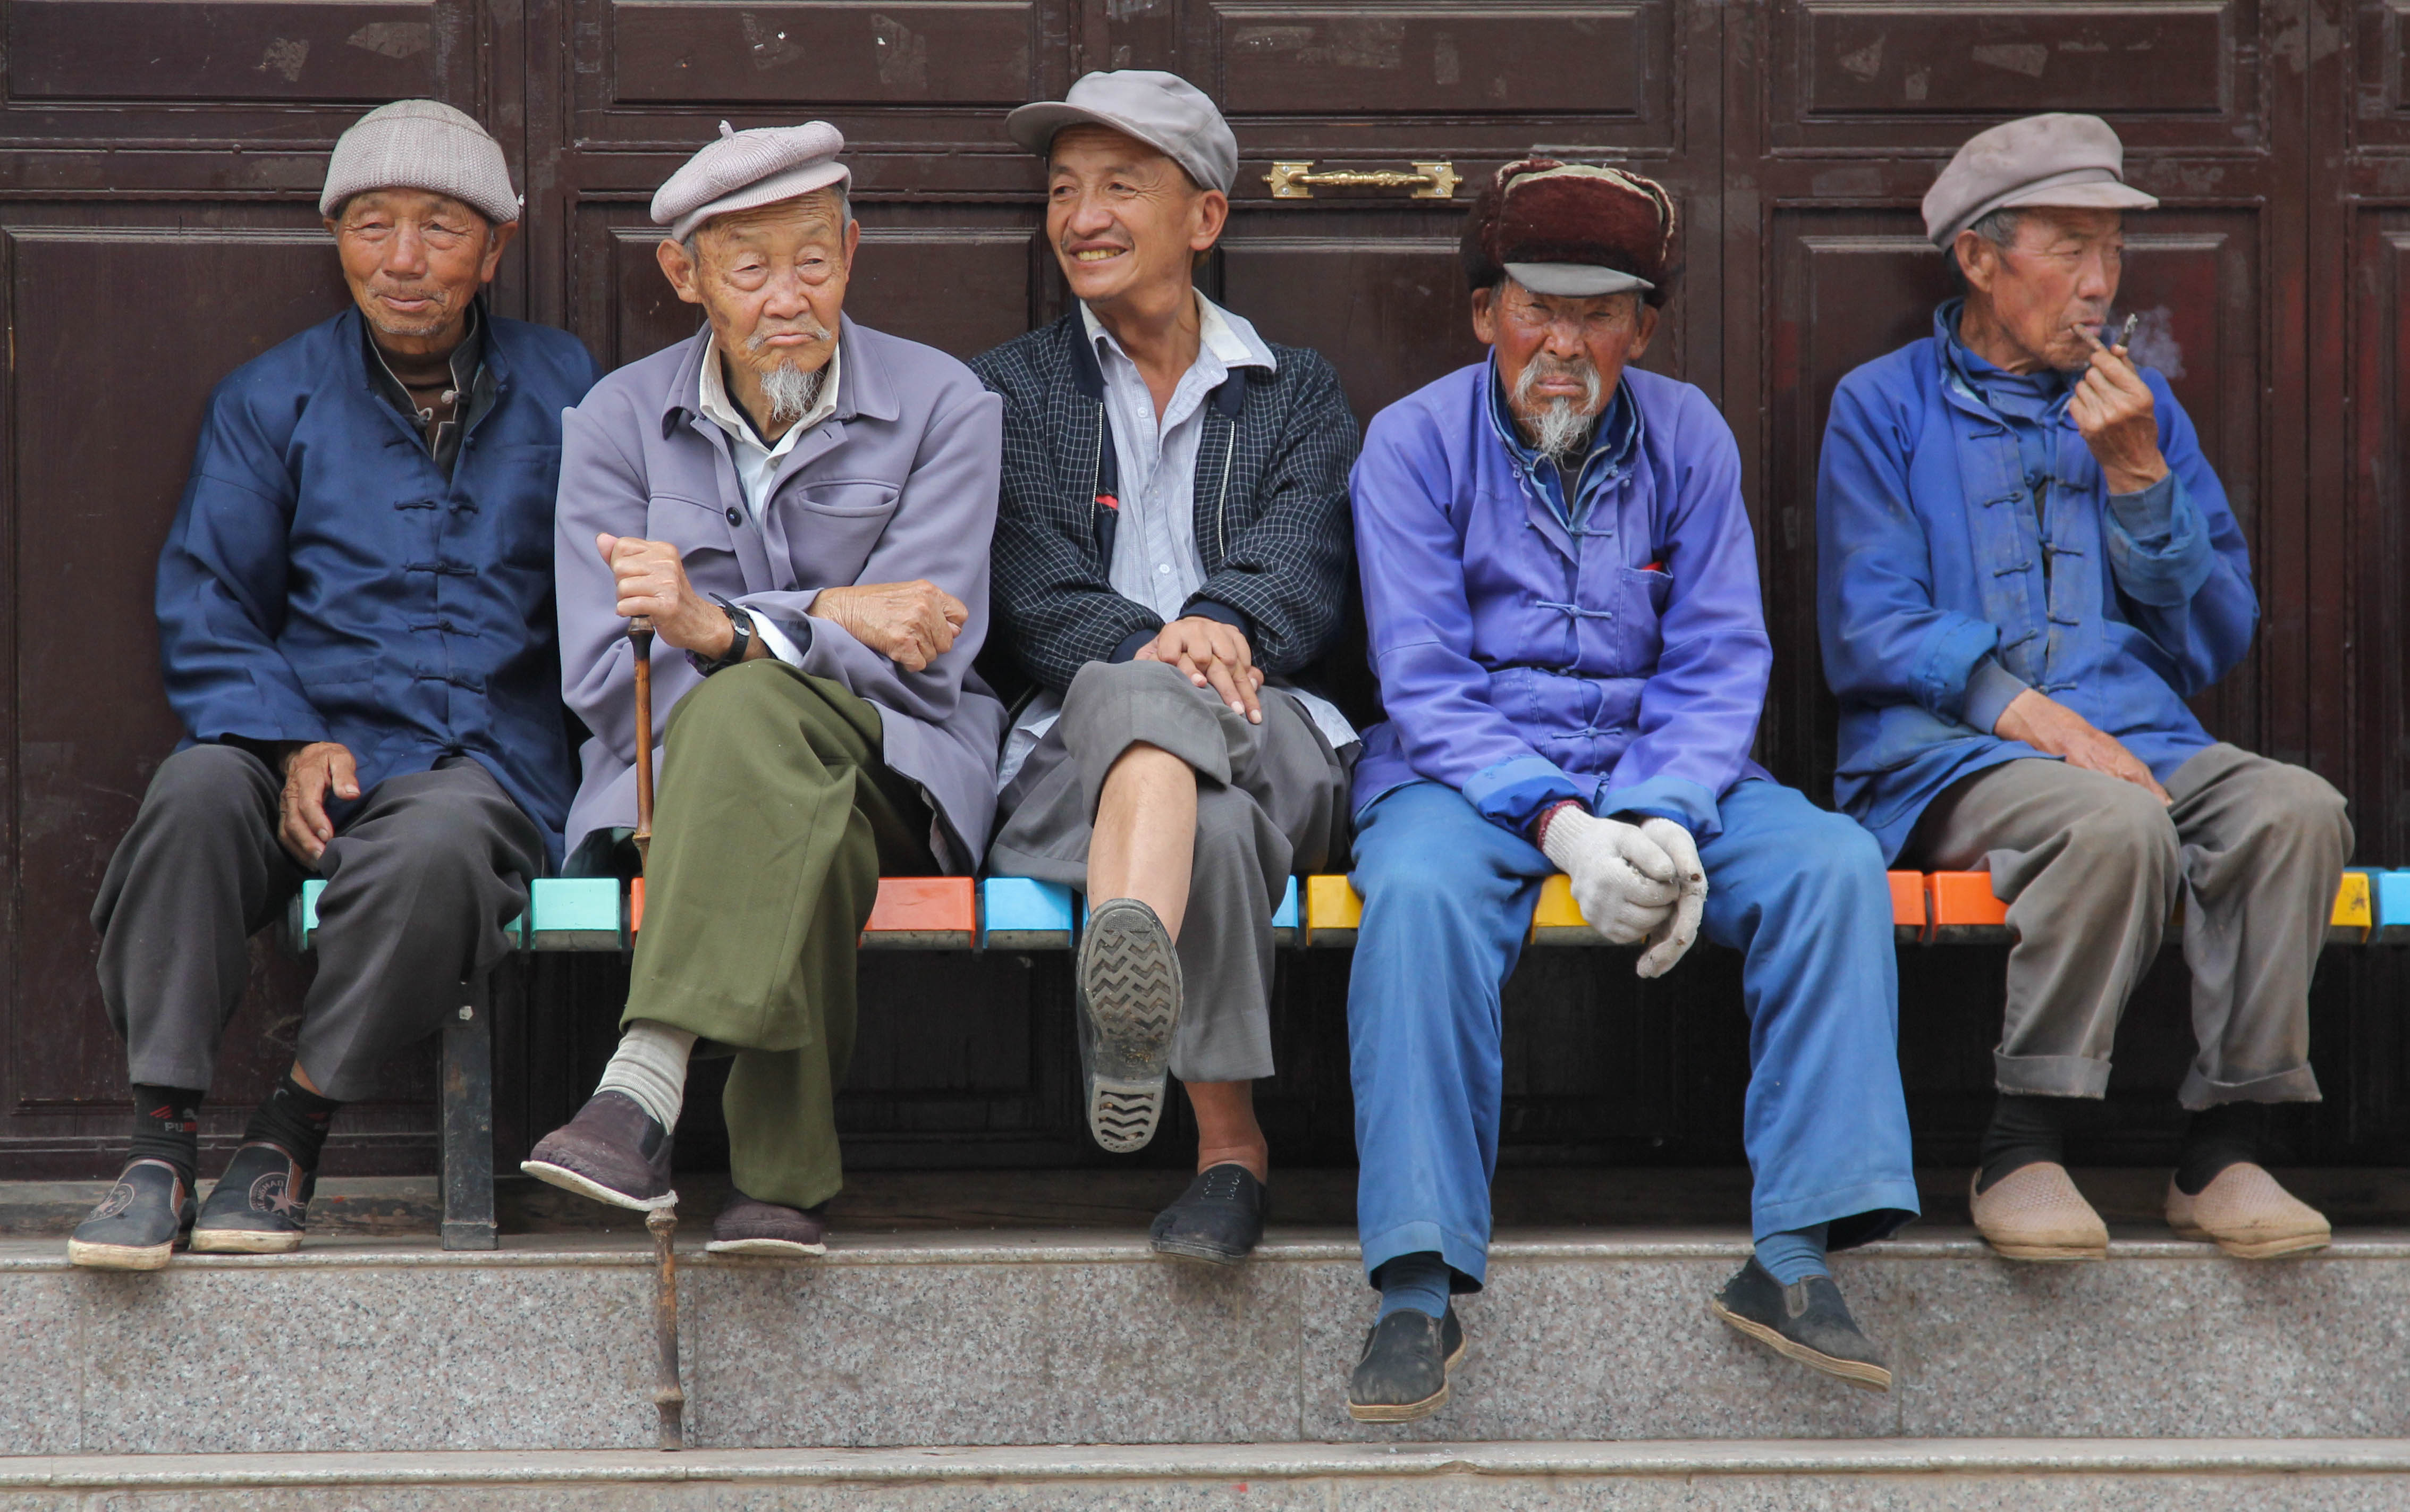 Old men group